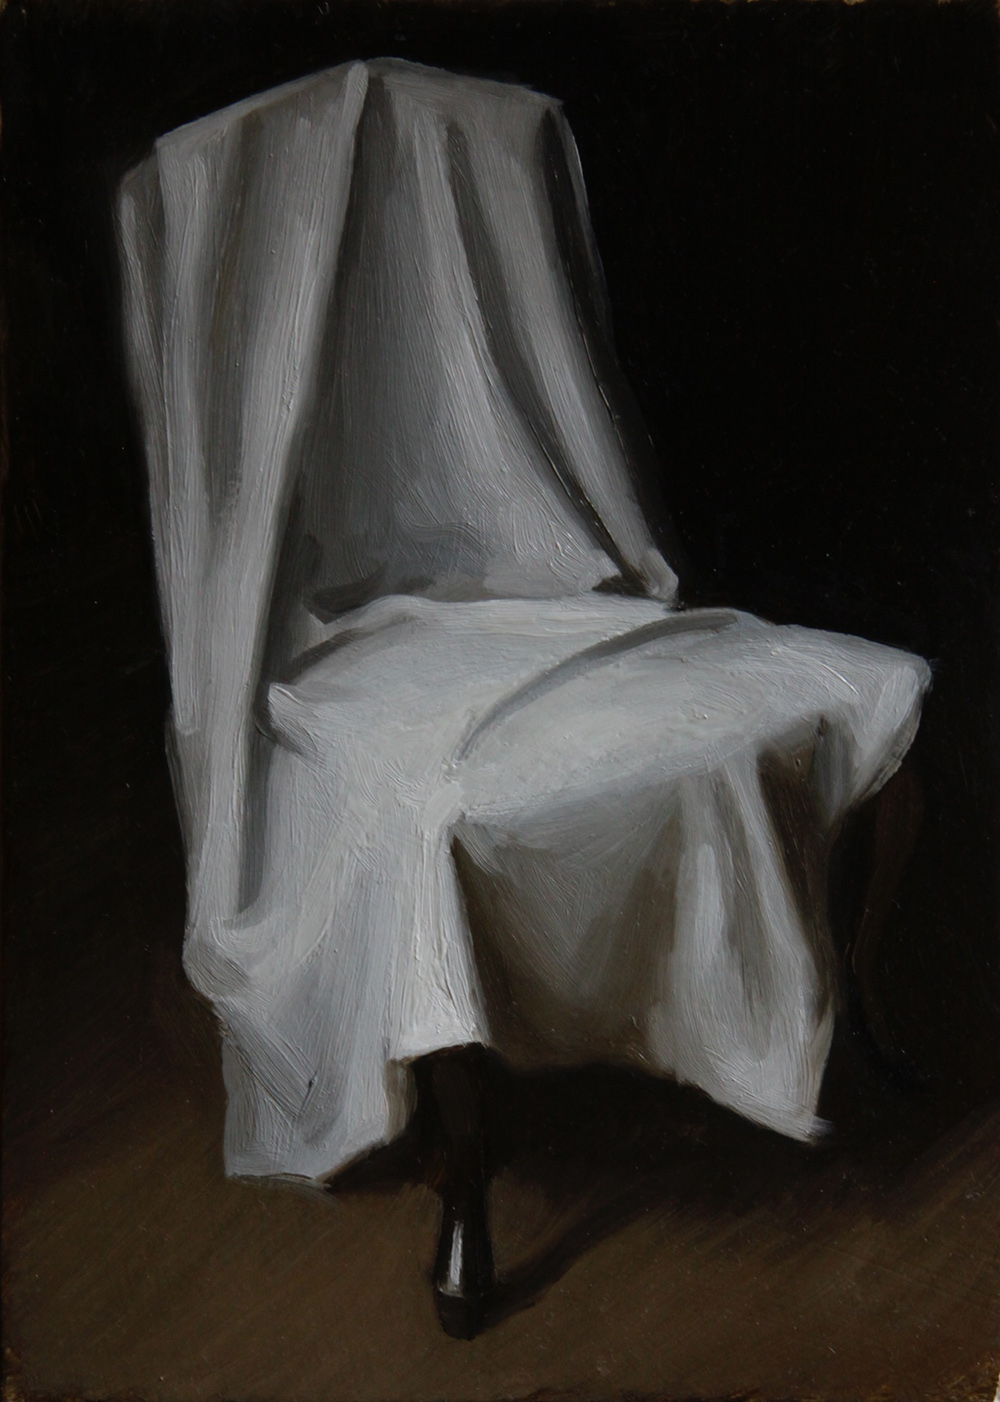 A draped chair